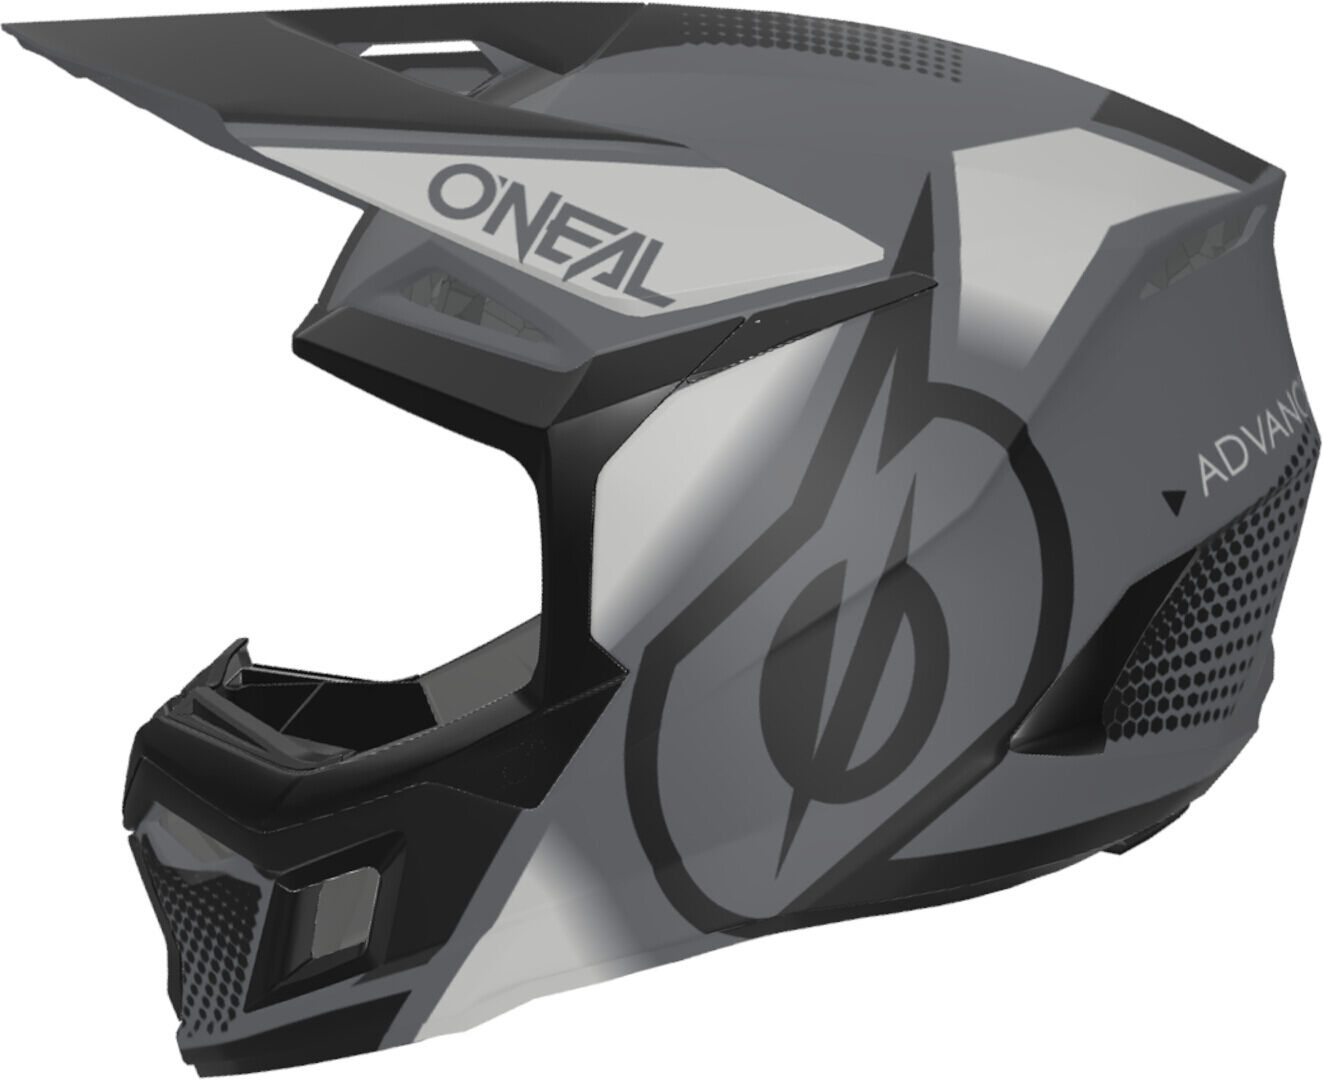 Oneal 3SRS Vision Casco de motocross - Negro Gris (L)